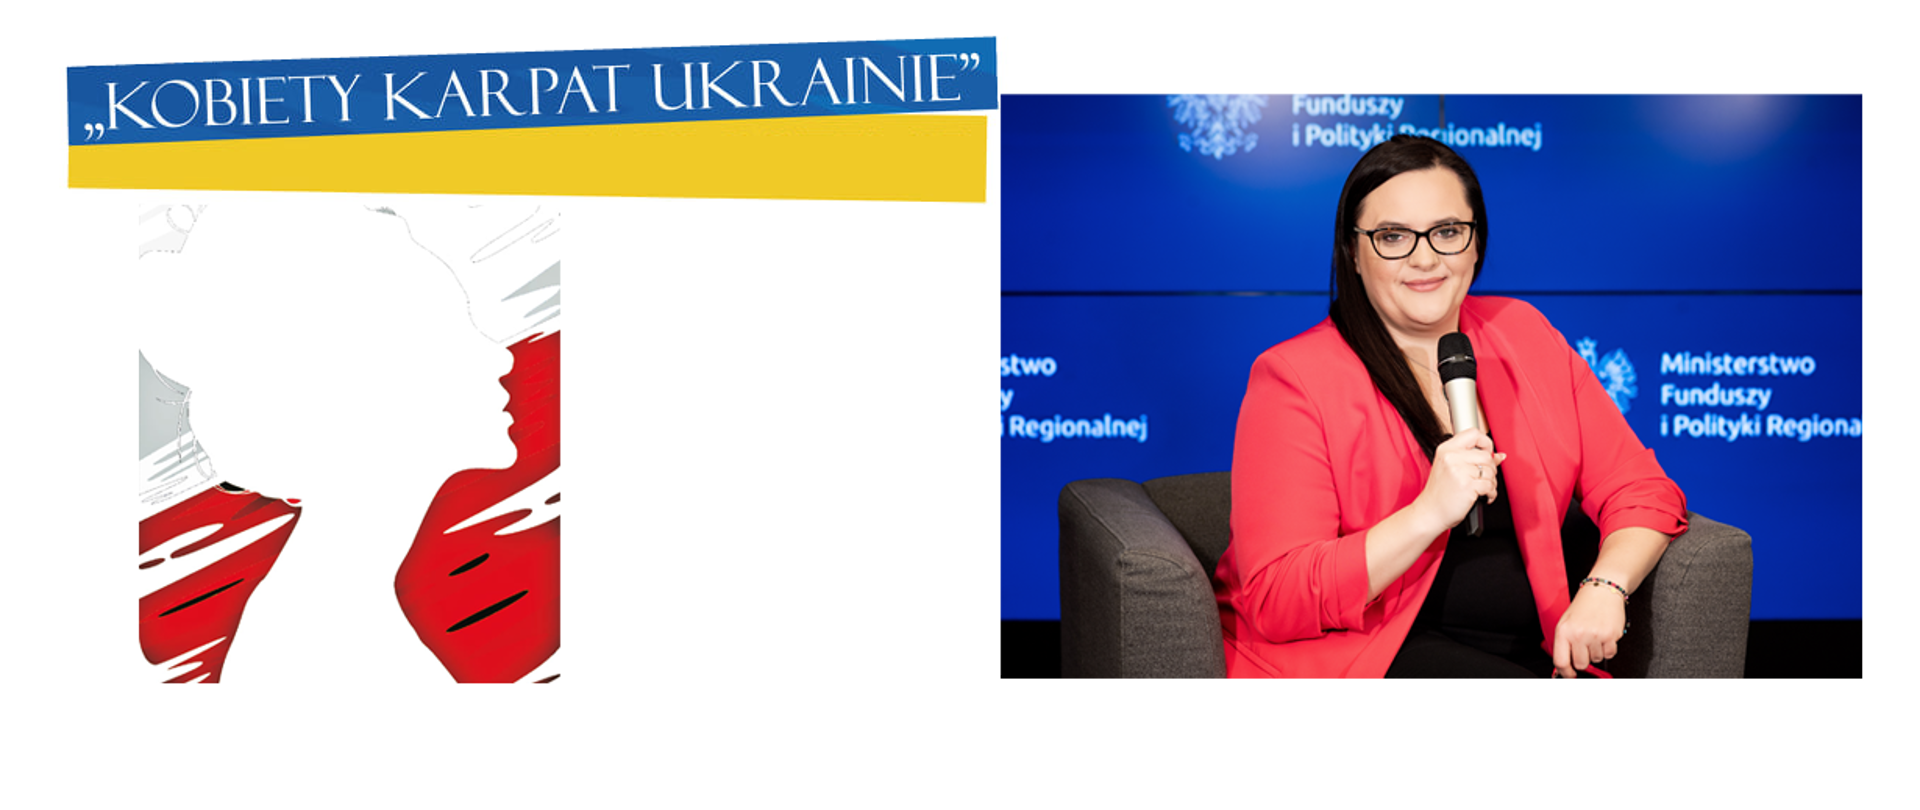 Po lewej na tle flagi Ukrainy napis: Kobiety Karpat Ukrainie. Poniżej grafika z kobietą. Po prawej zdjęcie wiceminister Małgorzaty Jarosińskiej-Jedynak z mikrofonem.